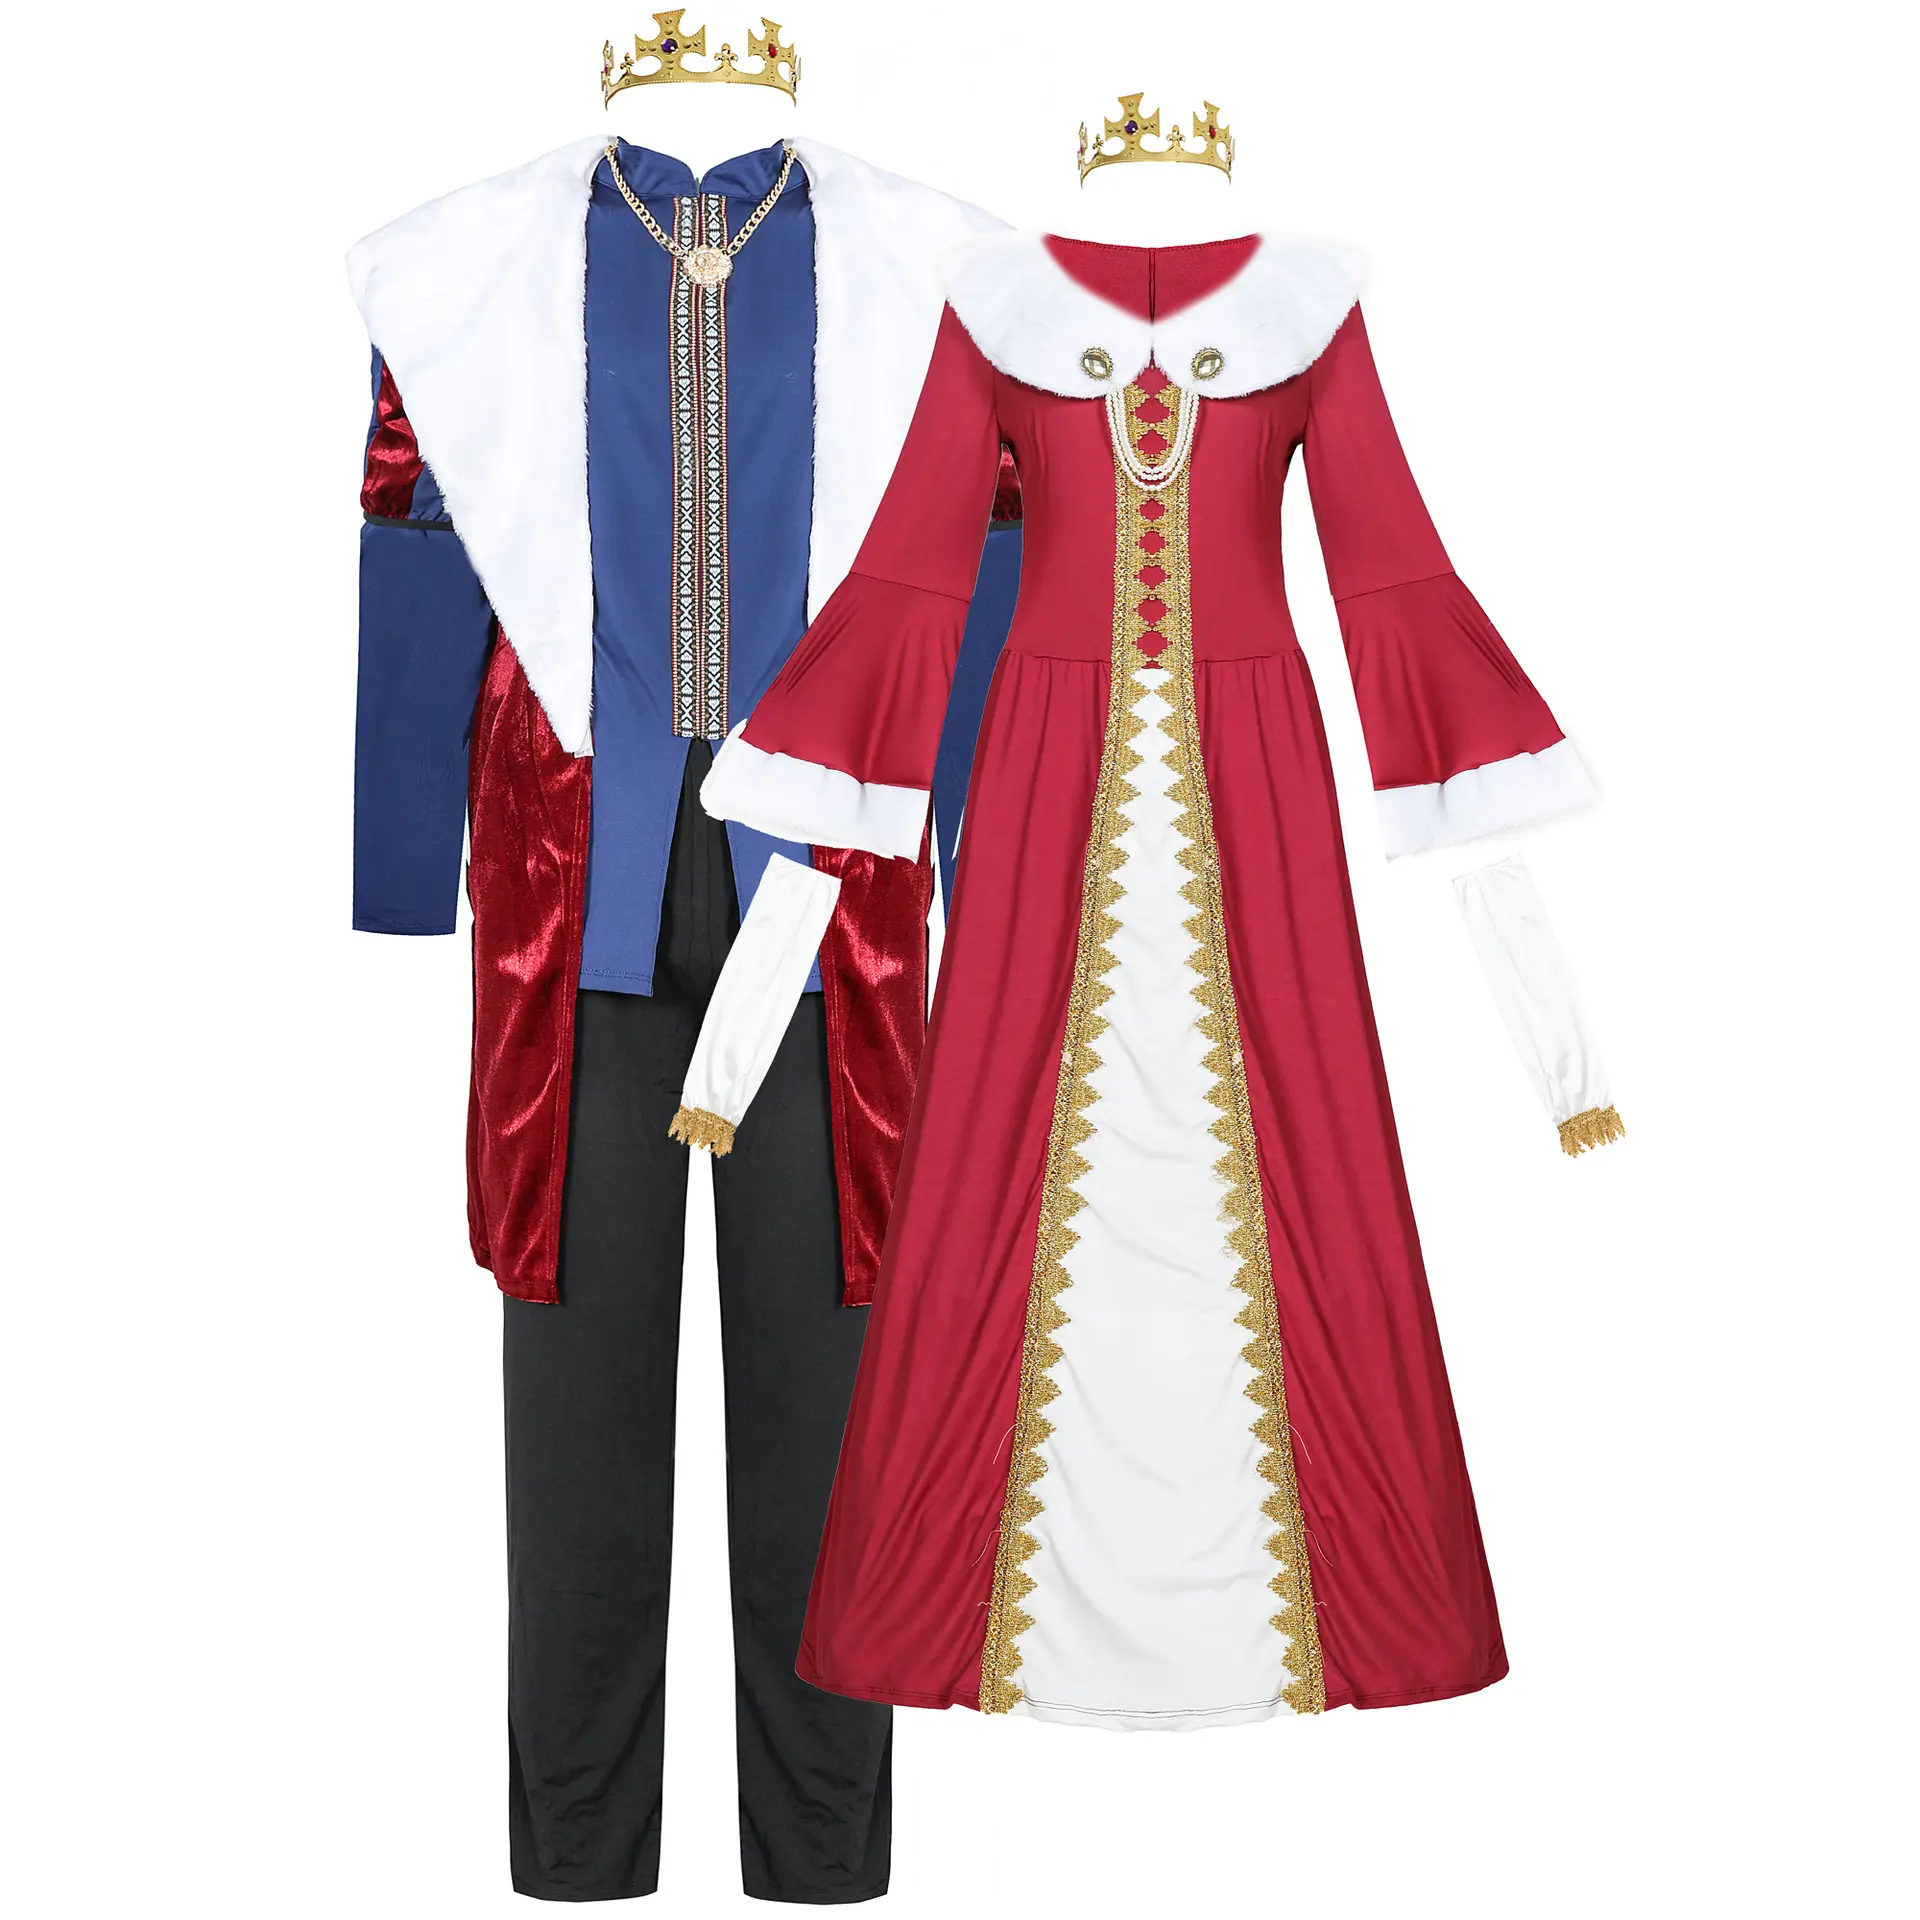 Costume roi médiéval adulte Costume ensemble roi reine couronne royale Robe et accessoires de Costume de sceptre royal